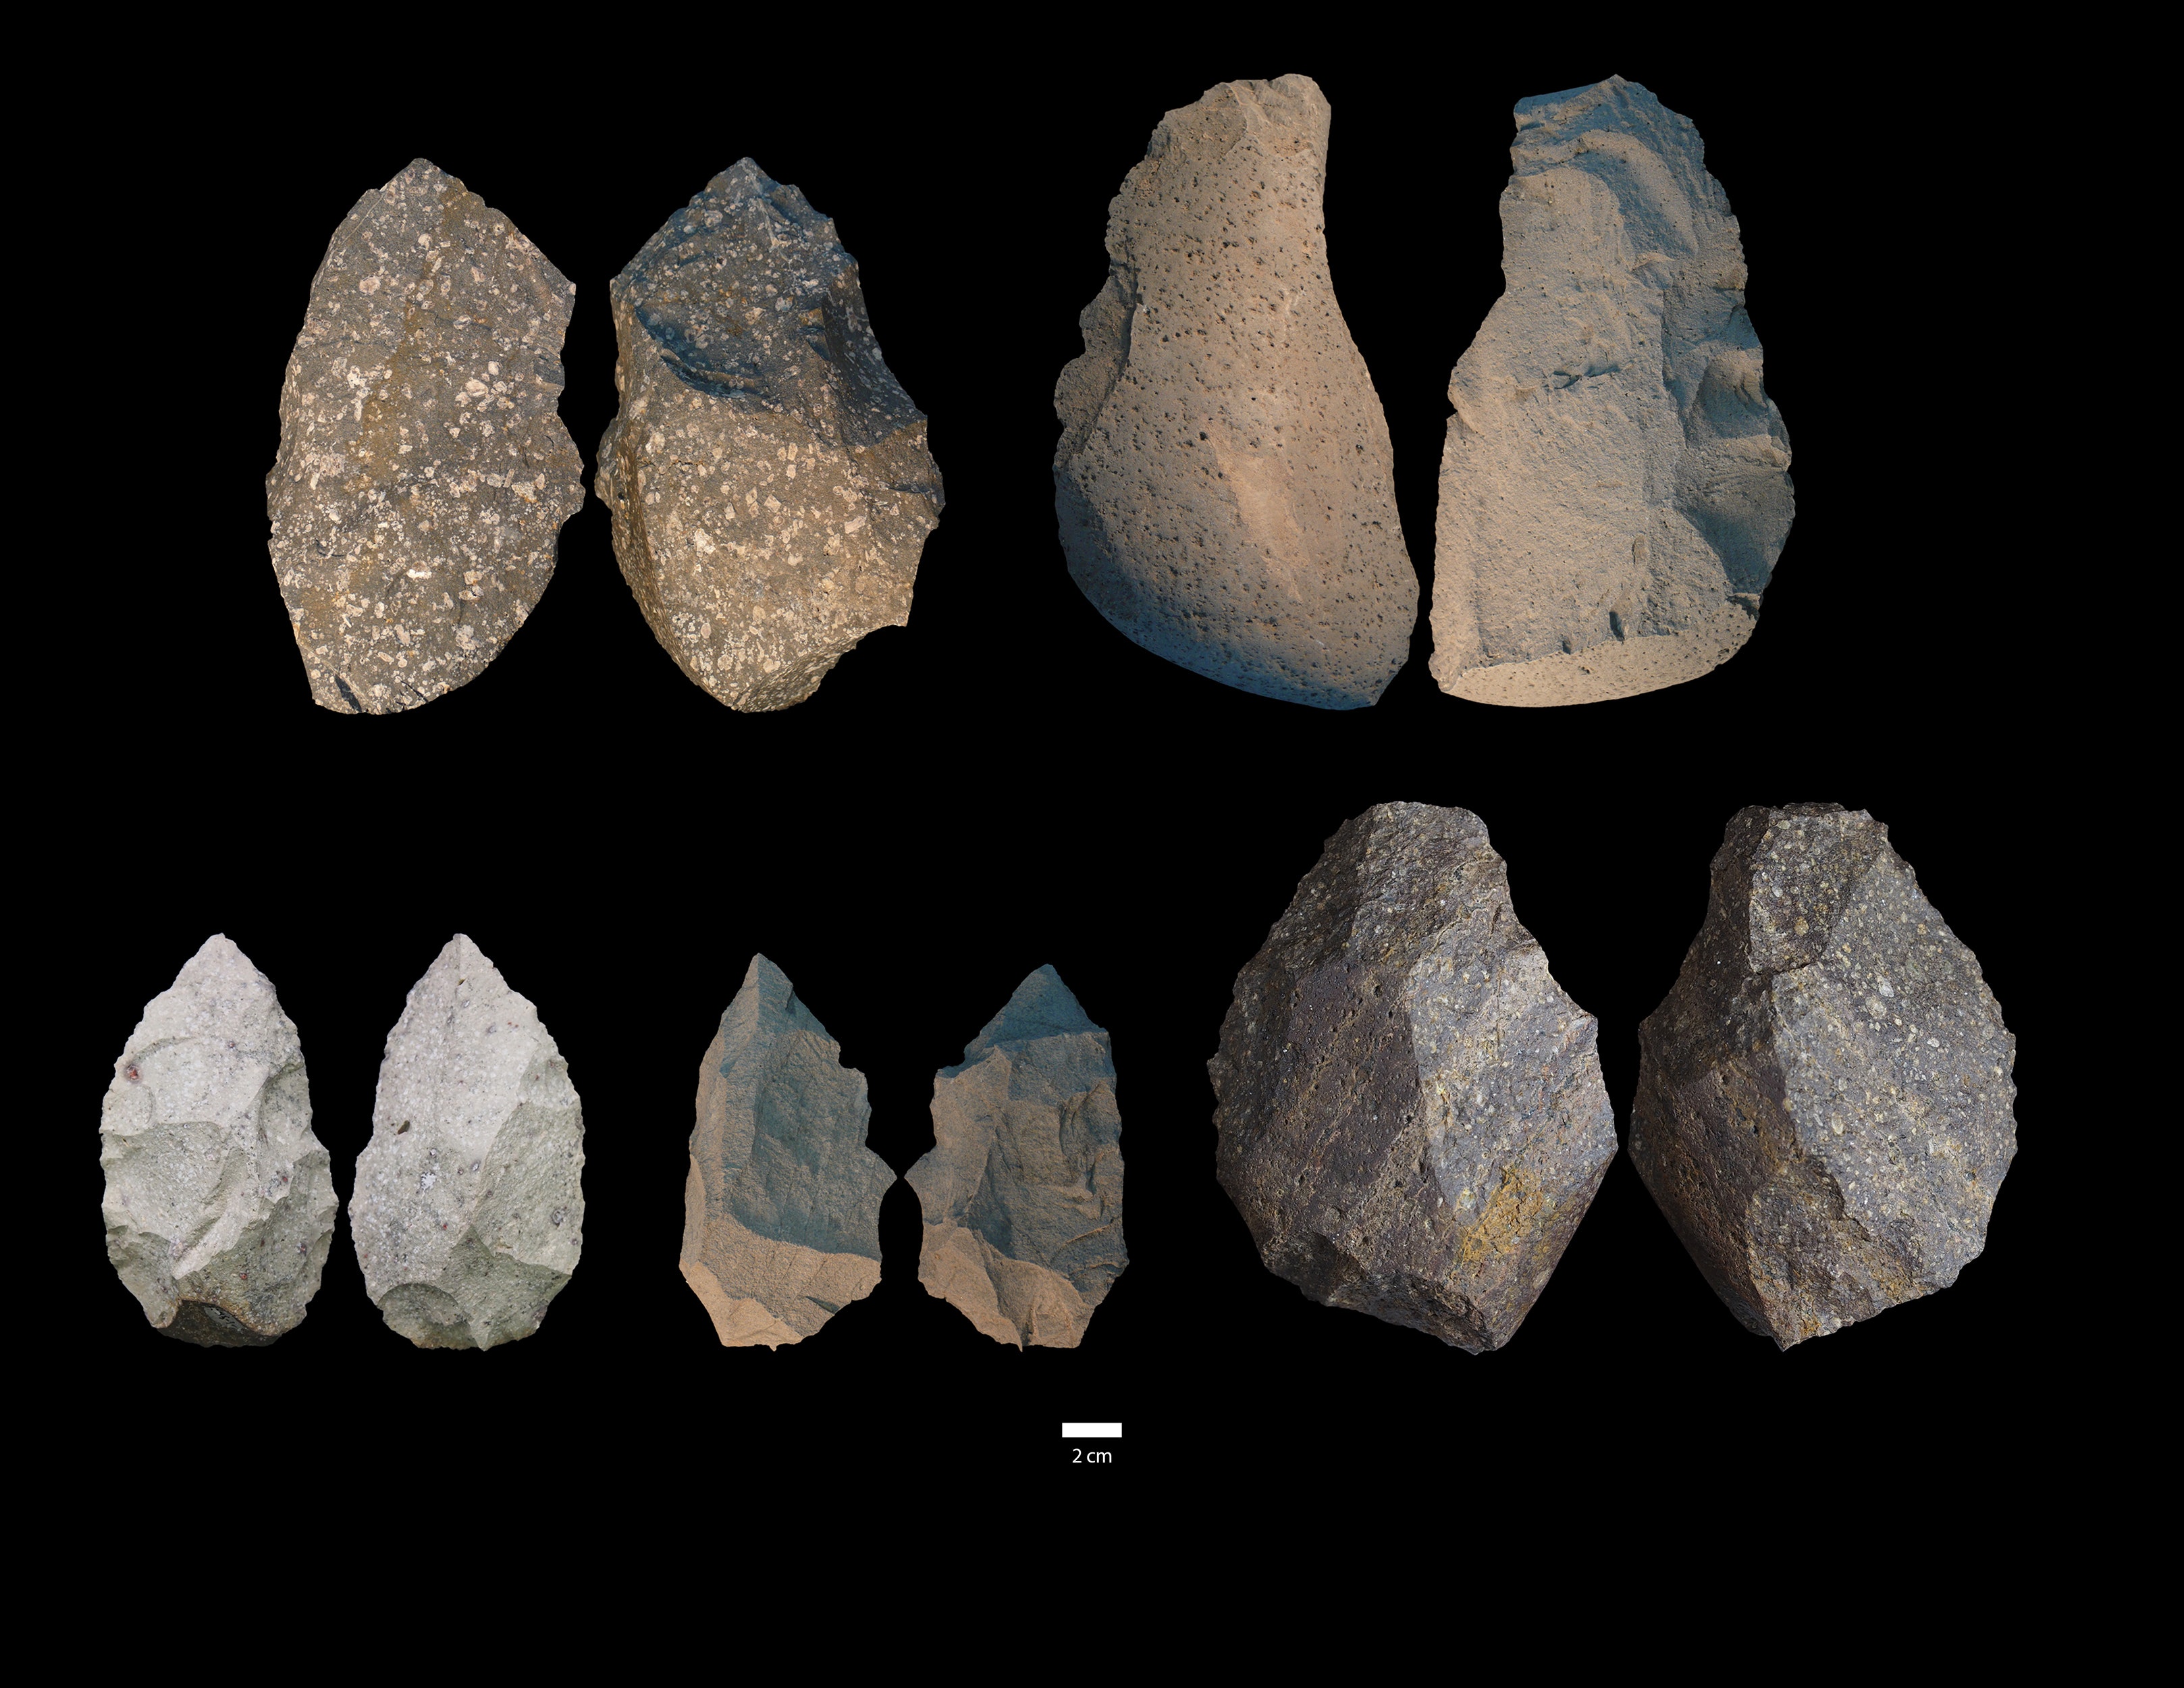 Những phát hiện mới về người cổ đại Homo Erectus